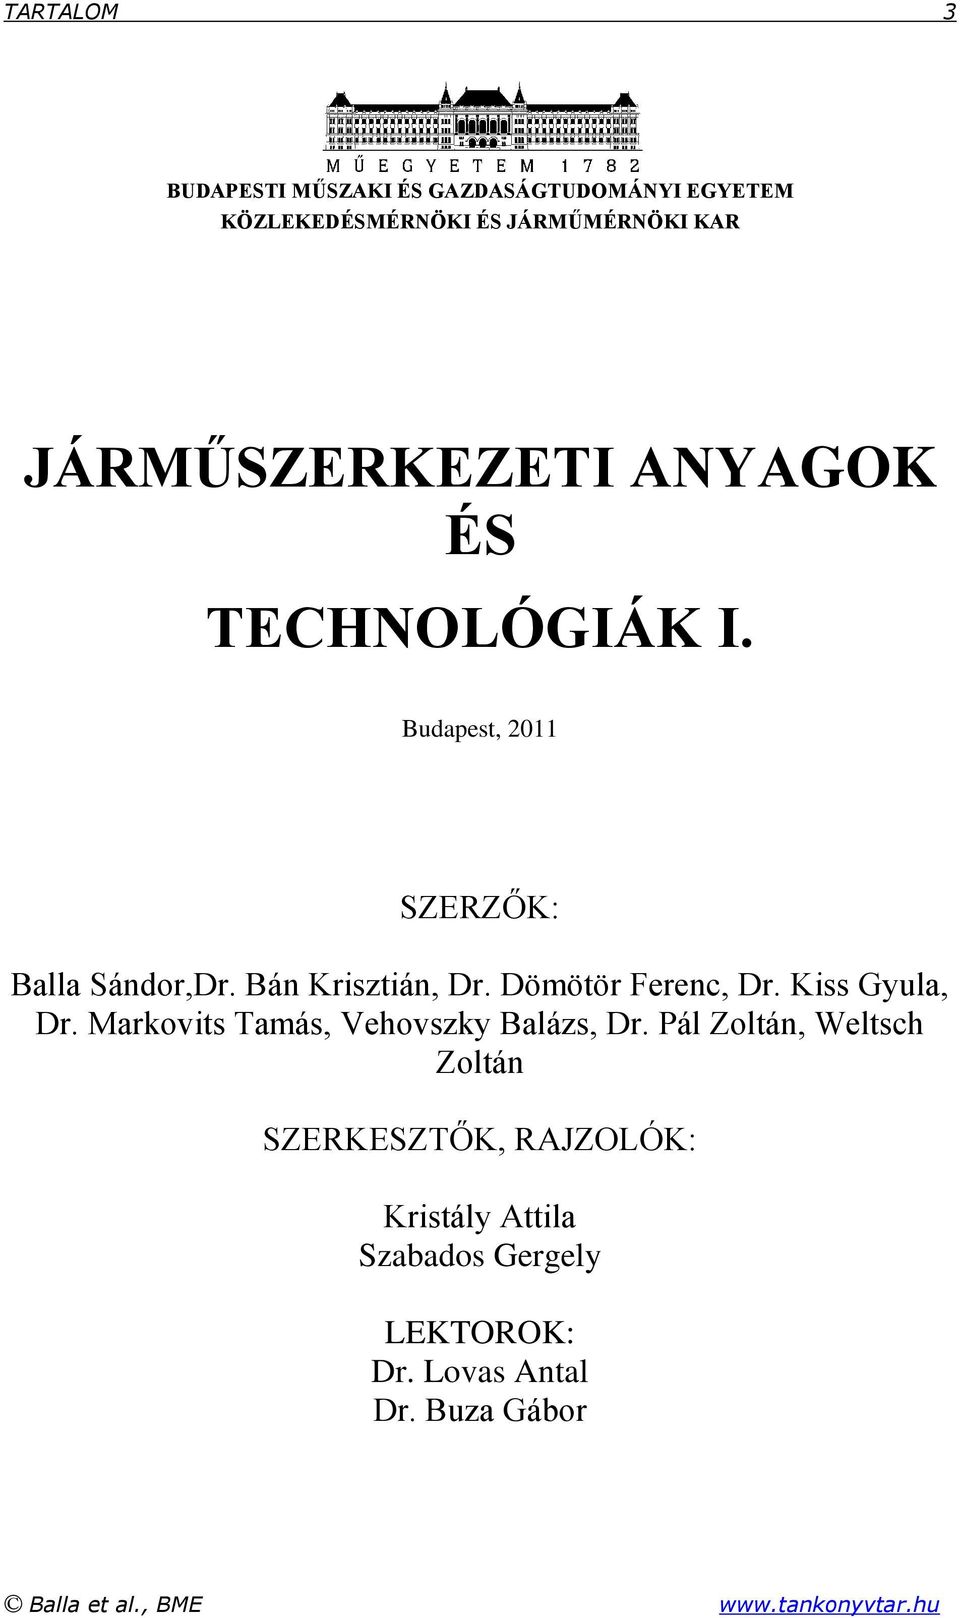 Járműszerkezeti Anyagok és Technológiák I. - PDF Ingyenes letöltés